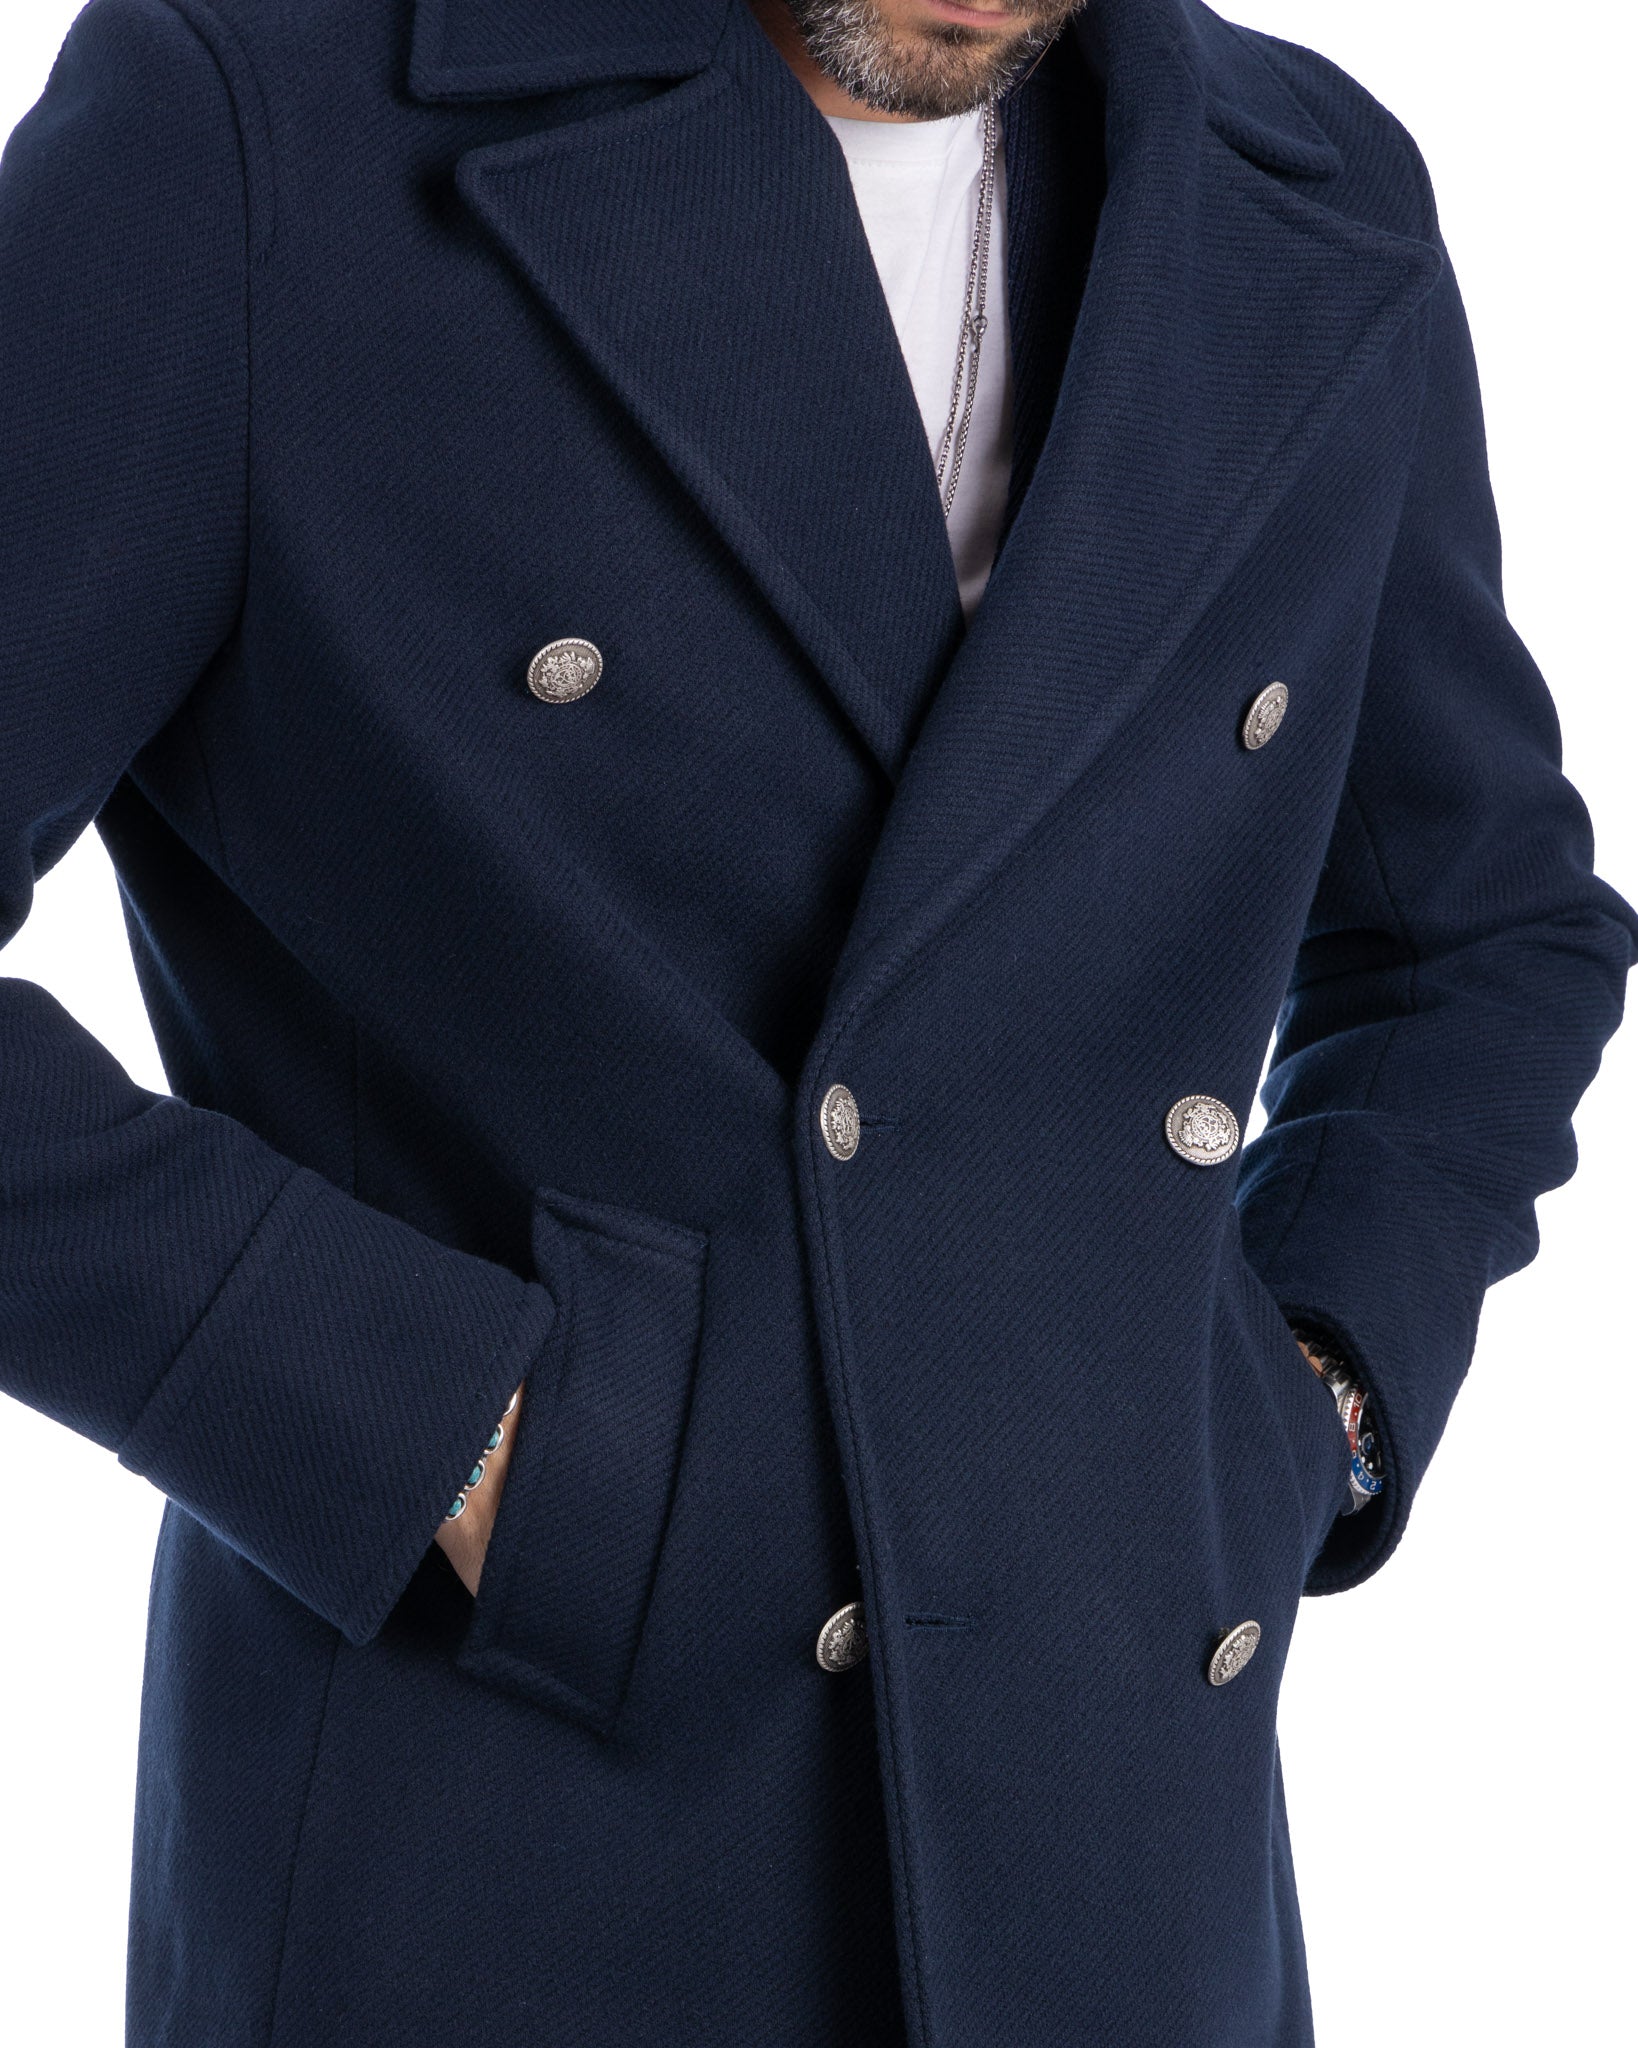 David - blue 3/4 coat